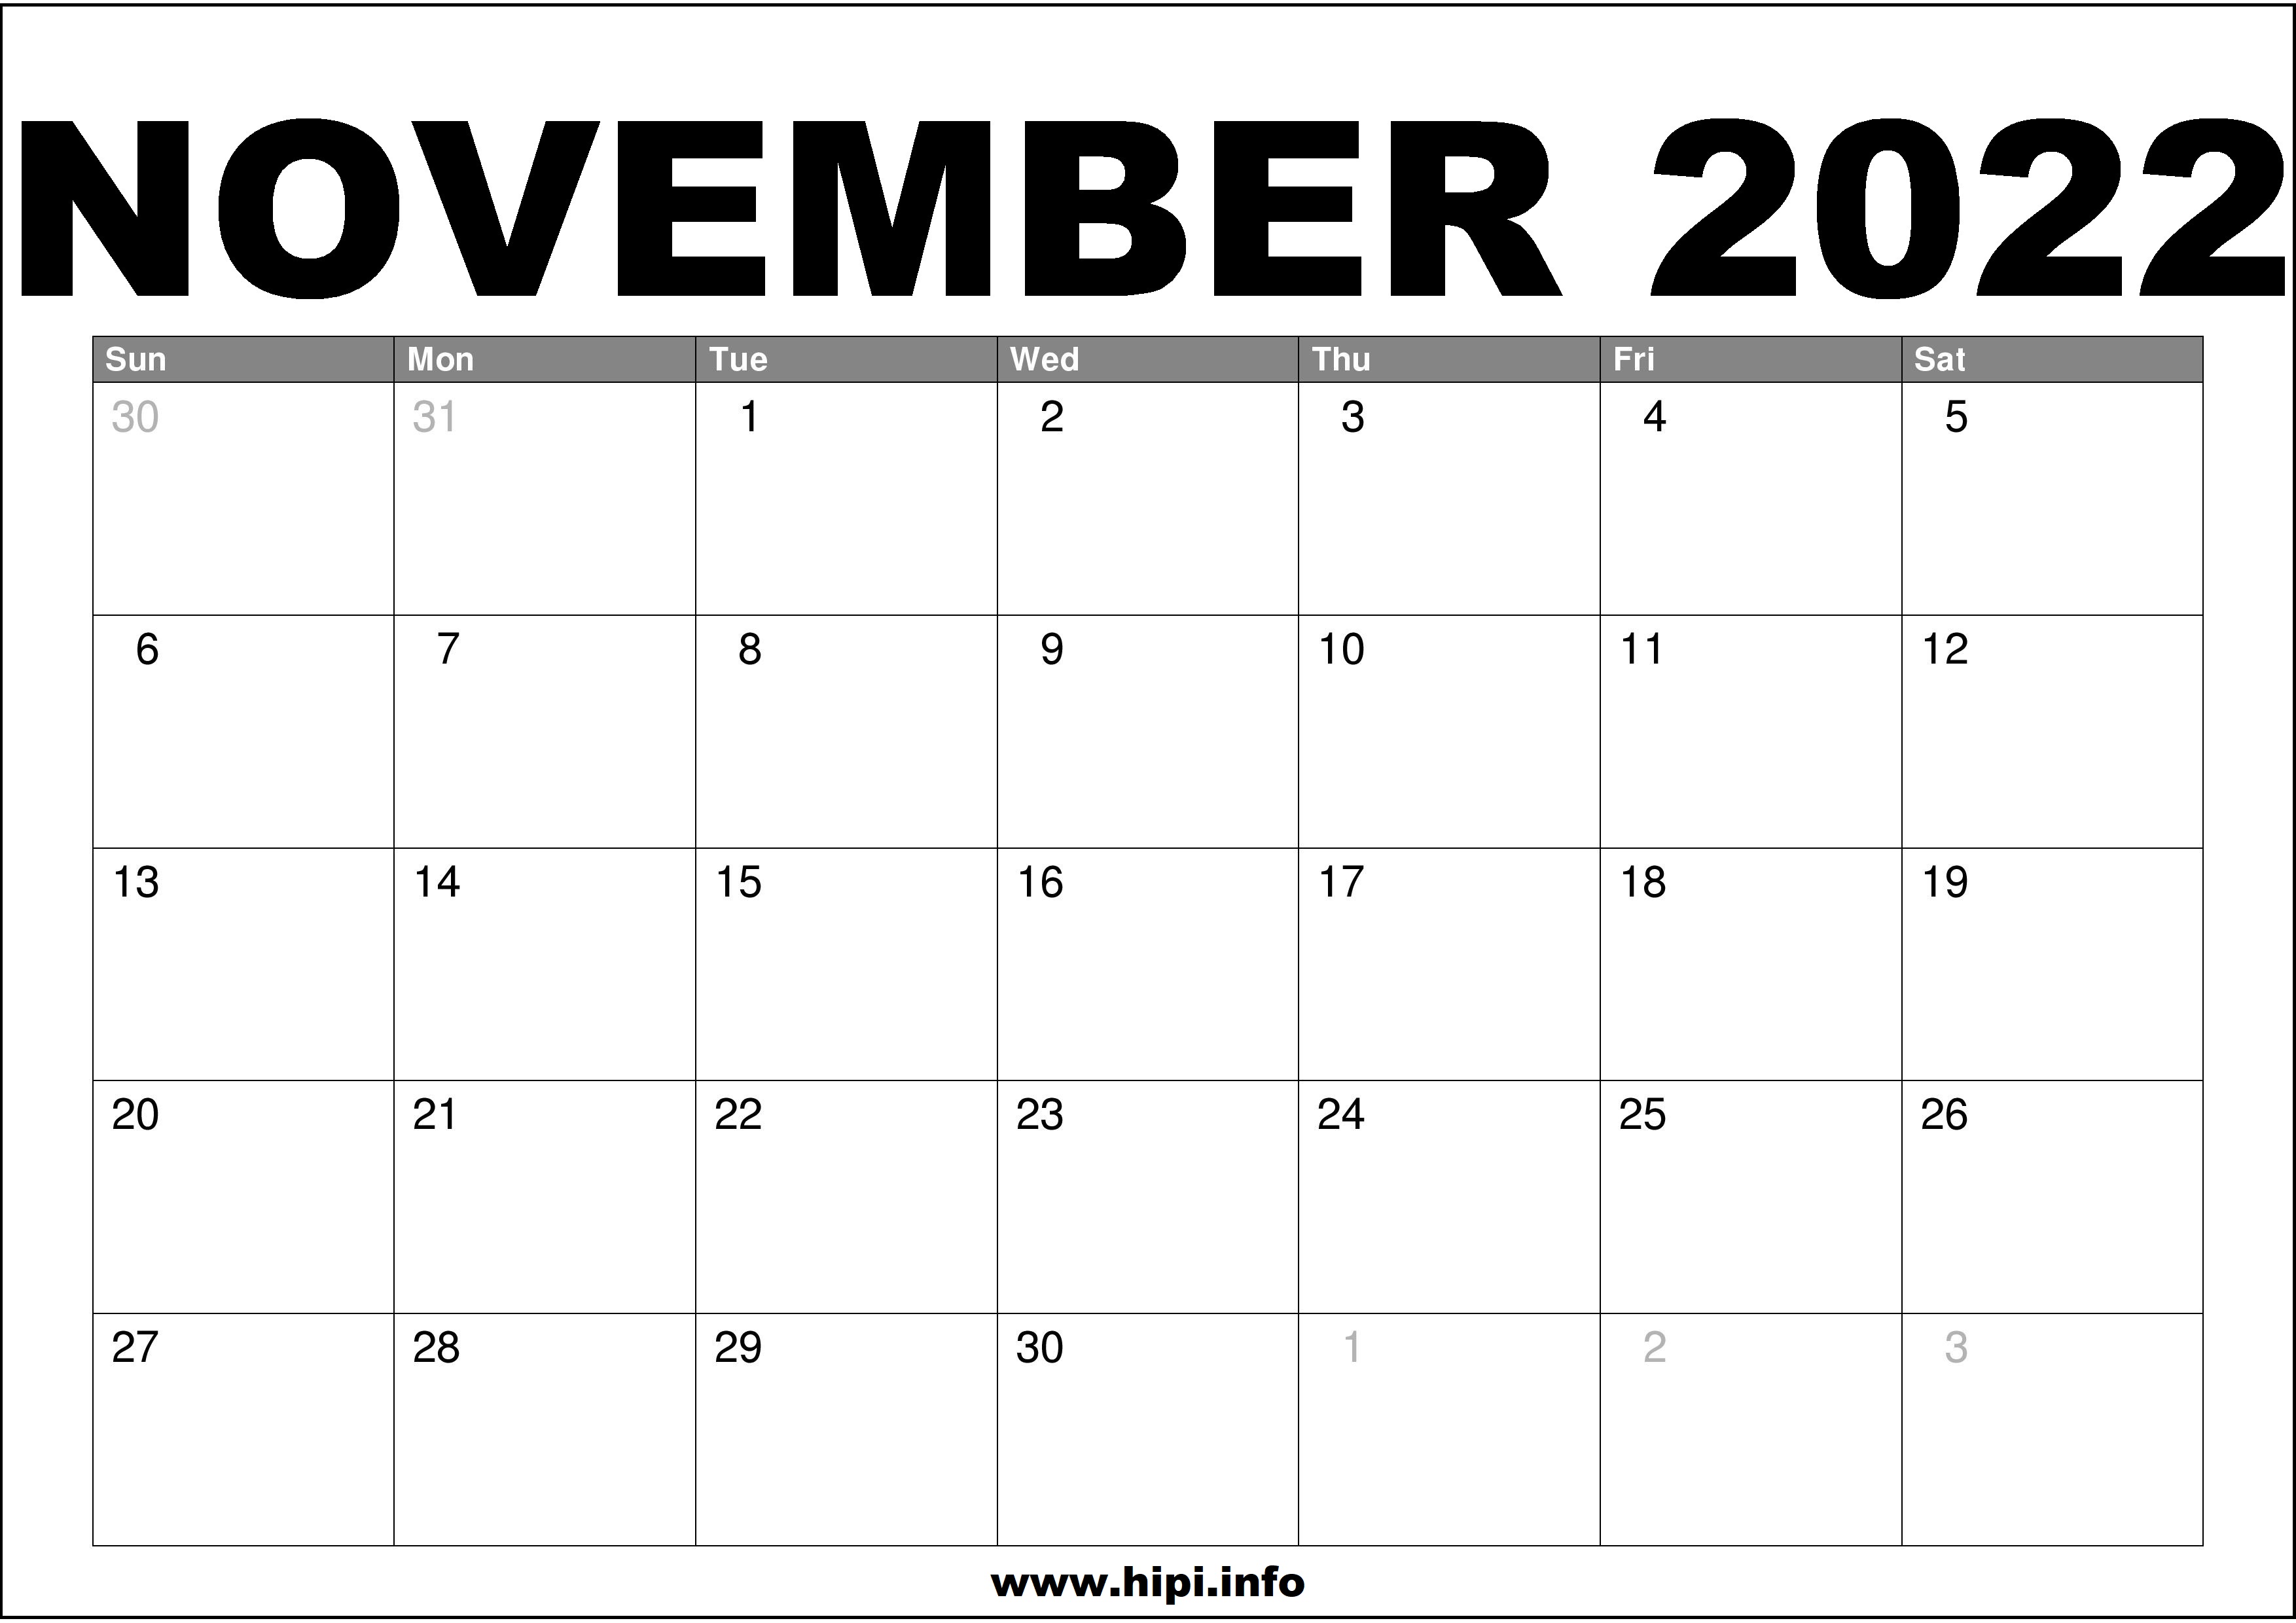 Printable Calendar 2022 November November 2022 Calendar Printable Free - Hipi.info | Calendars Printable Free